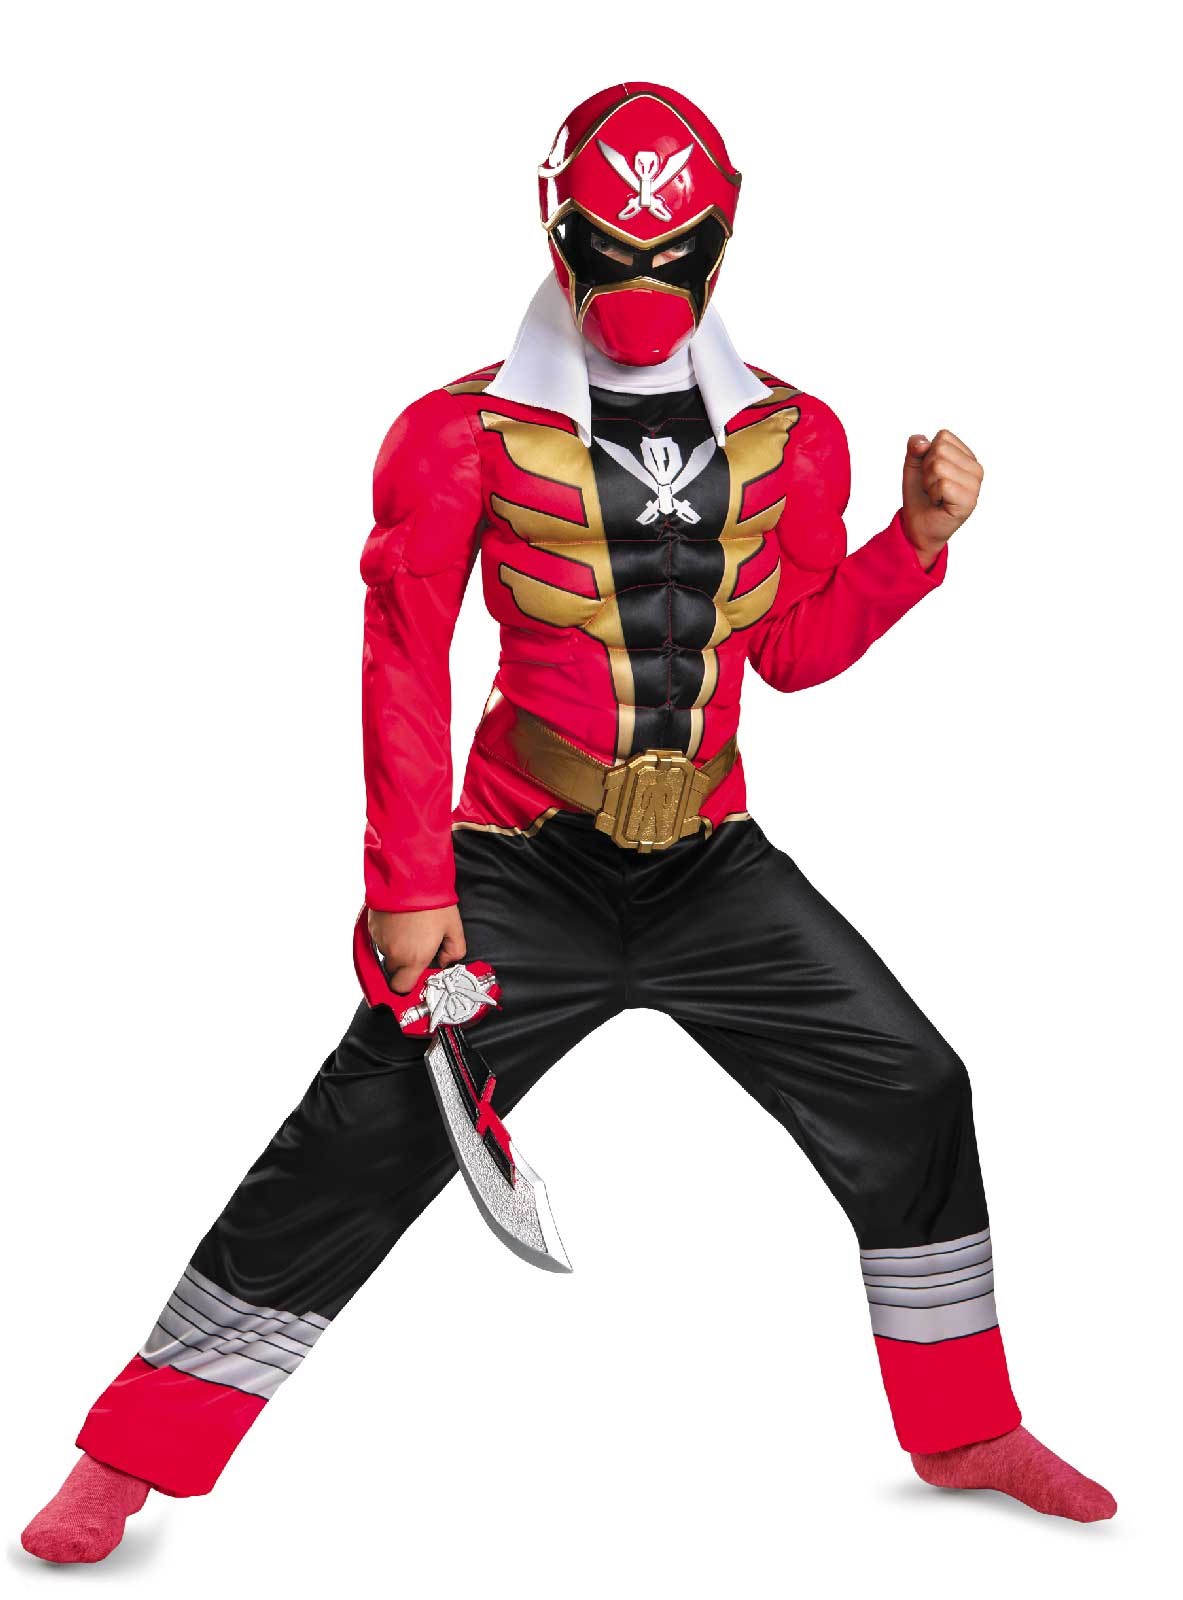 Power Ranger Super Megaforce Red Ranger Muscle Kids Costume